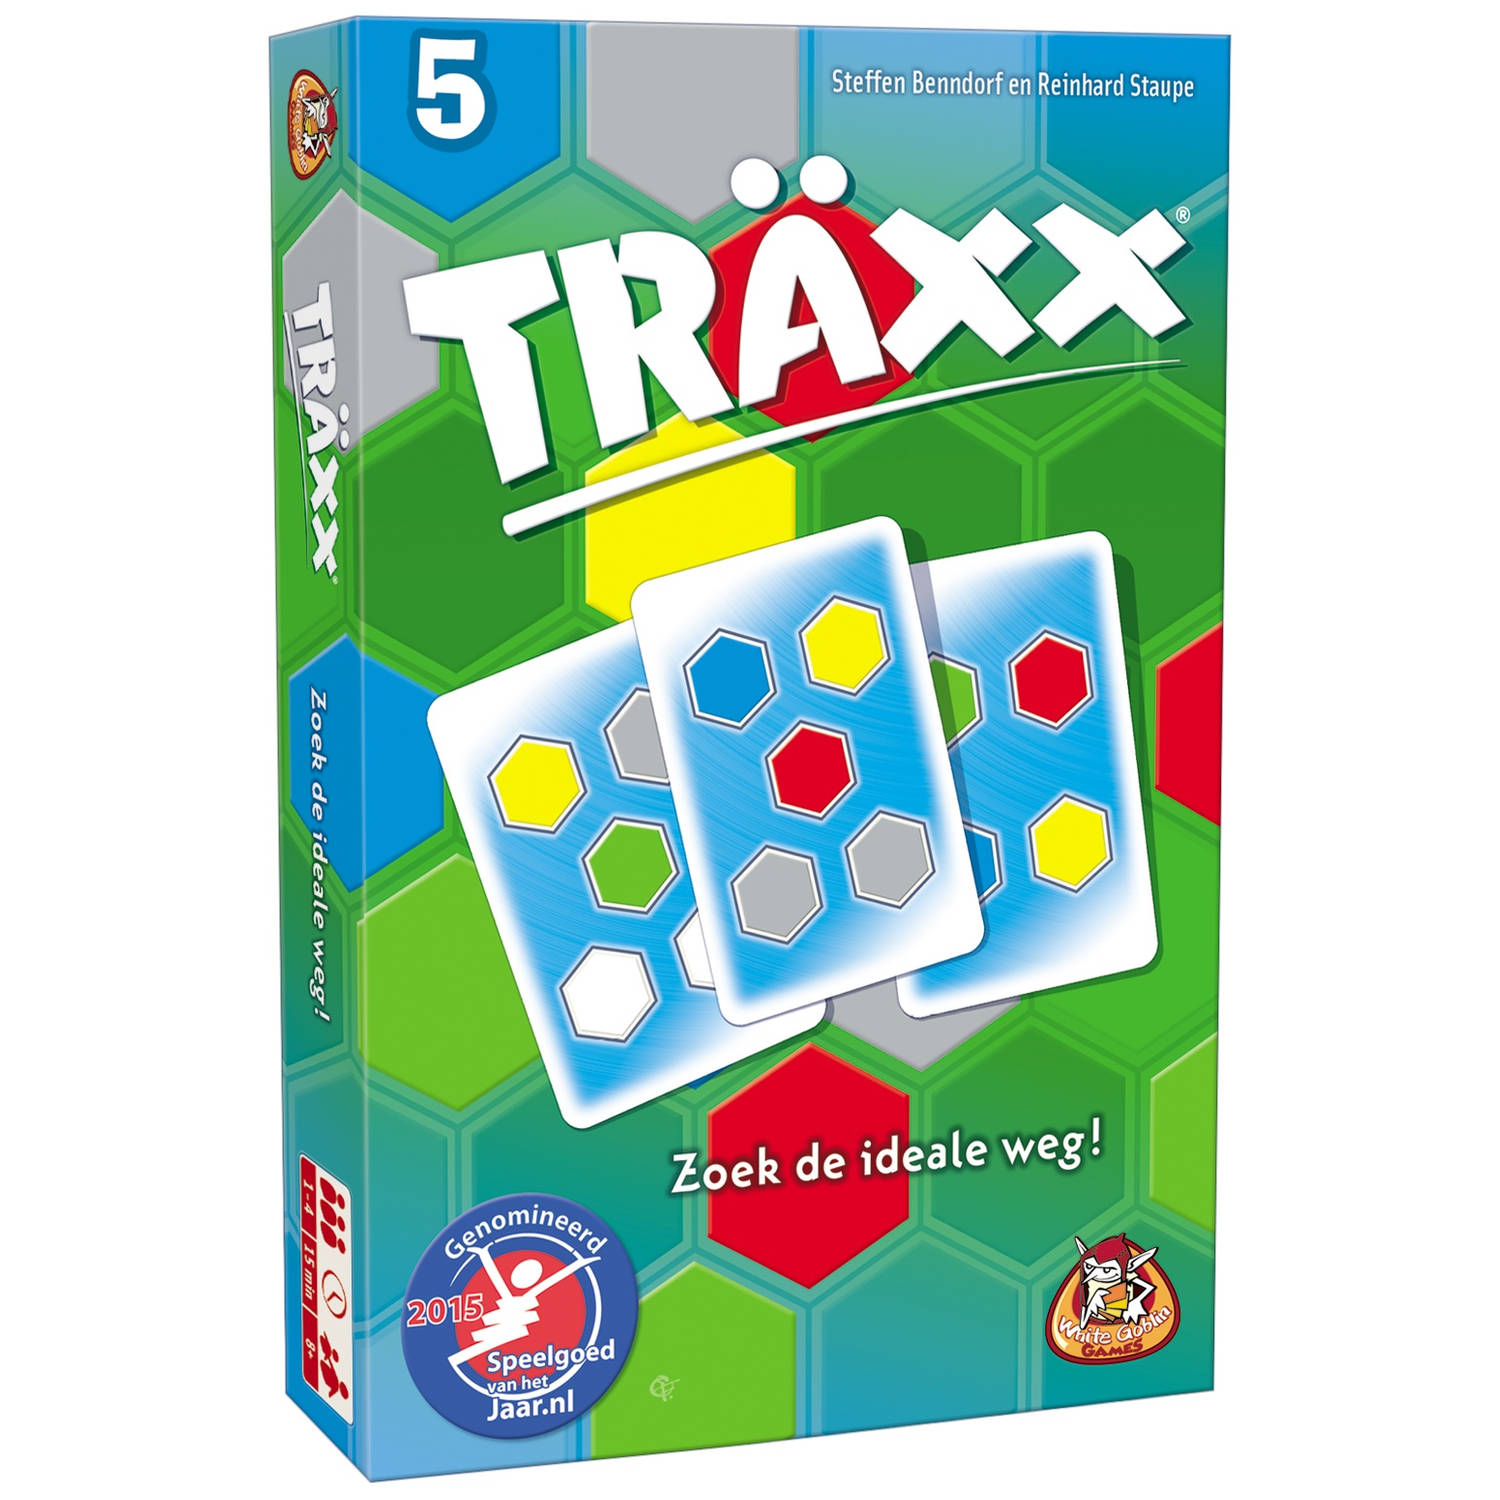 White Goblin Games kaartspel Träxx met schrijfblokken (NL)